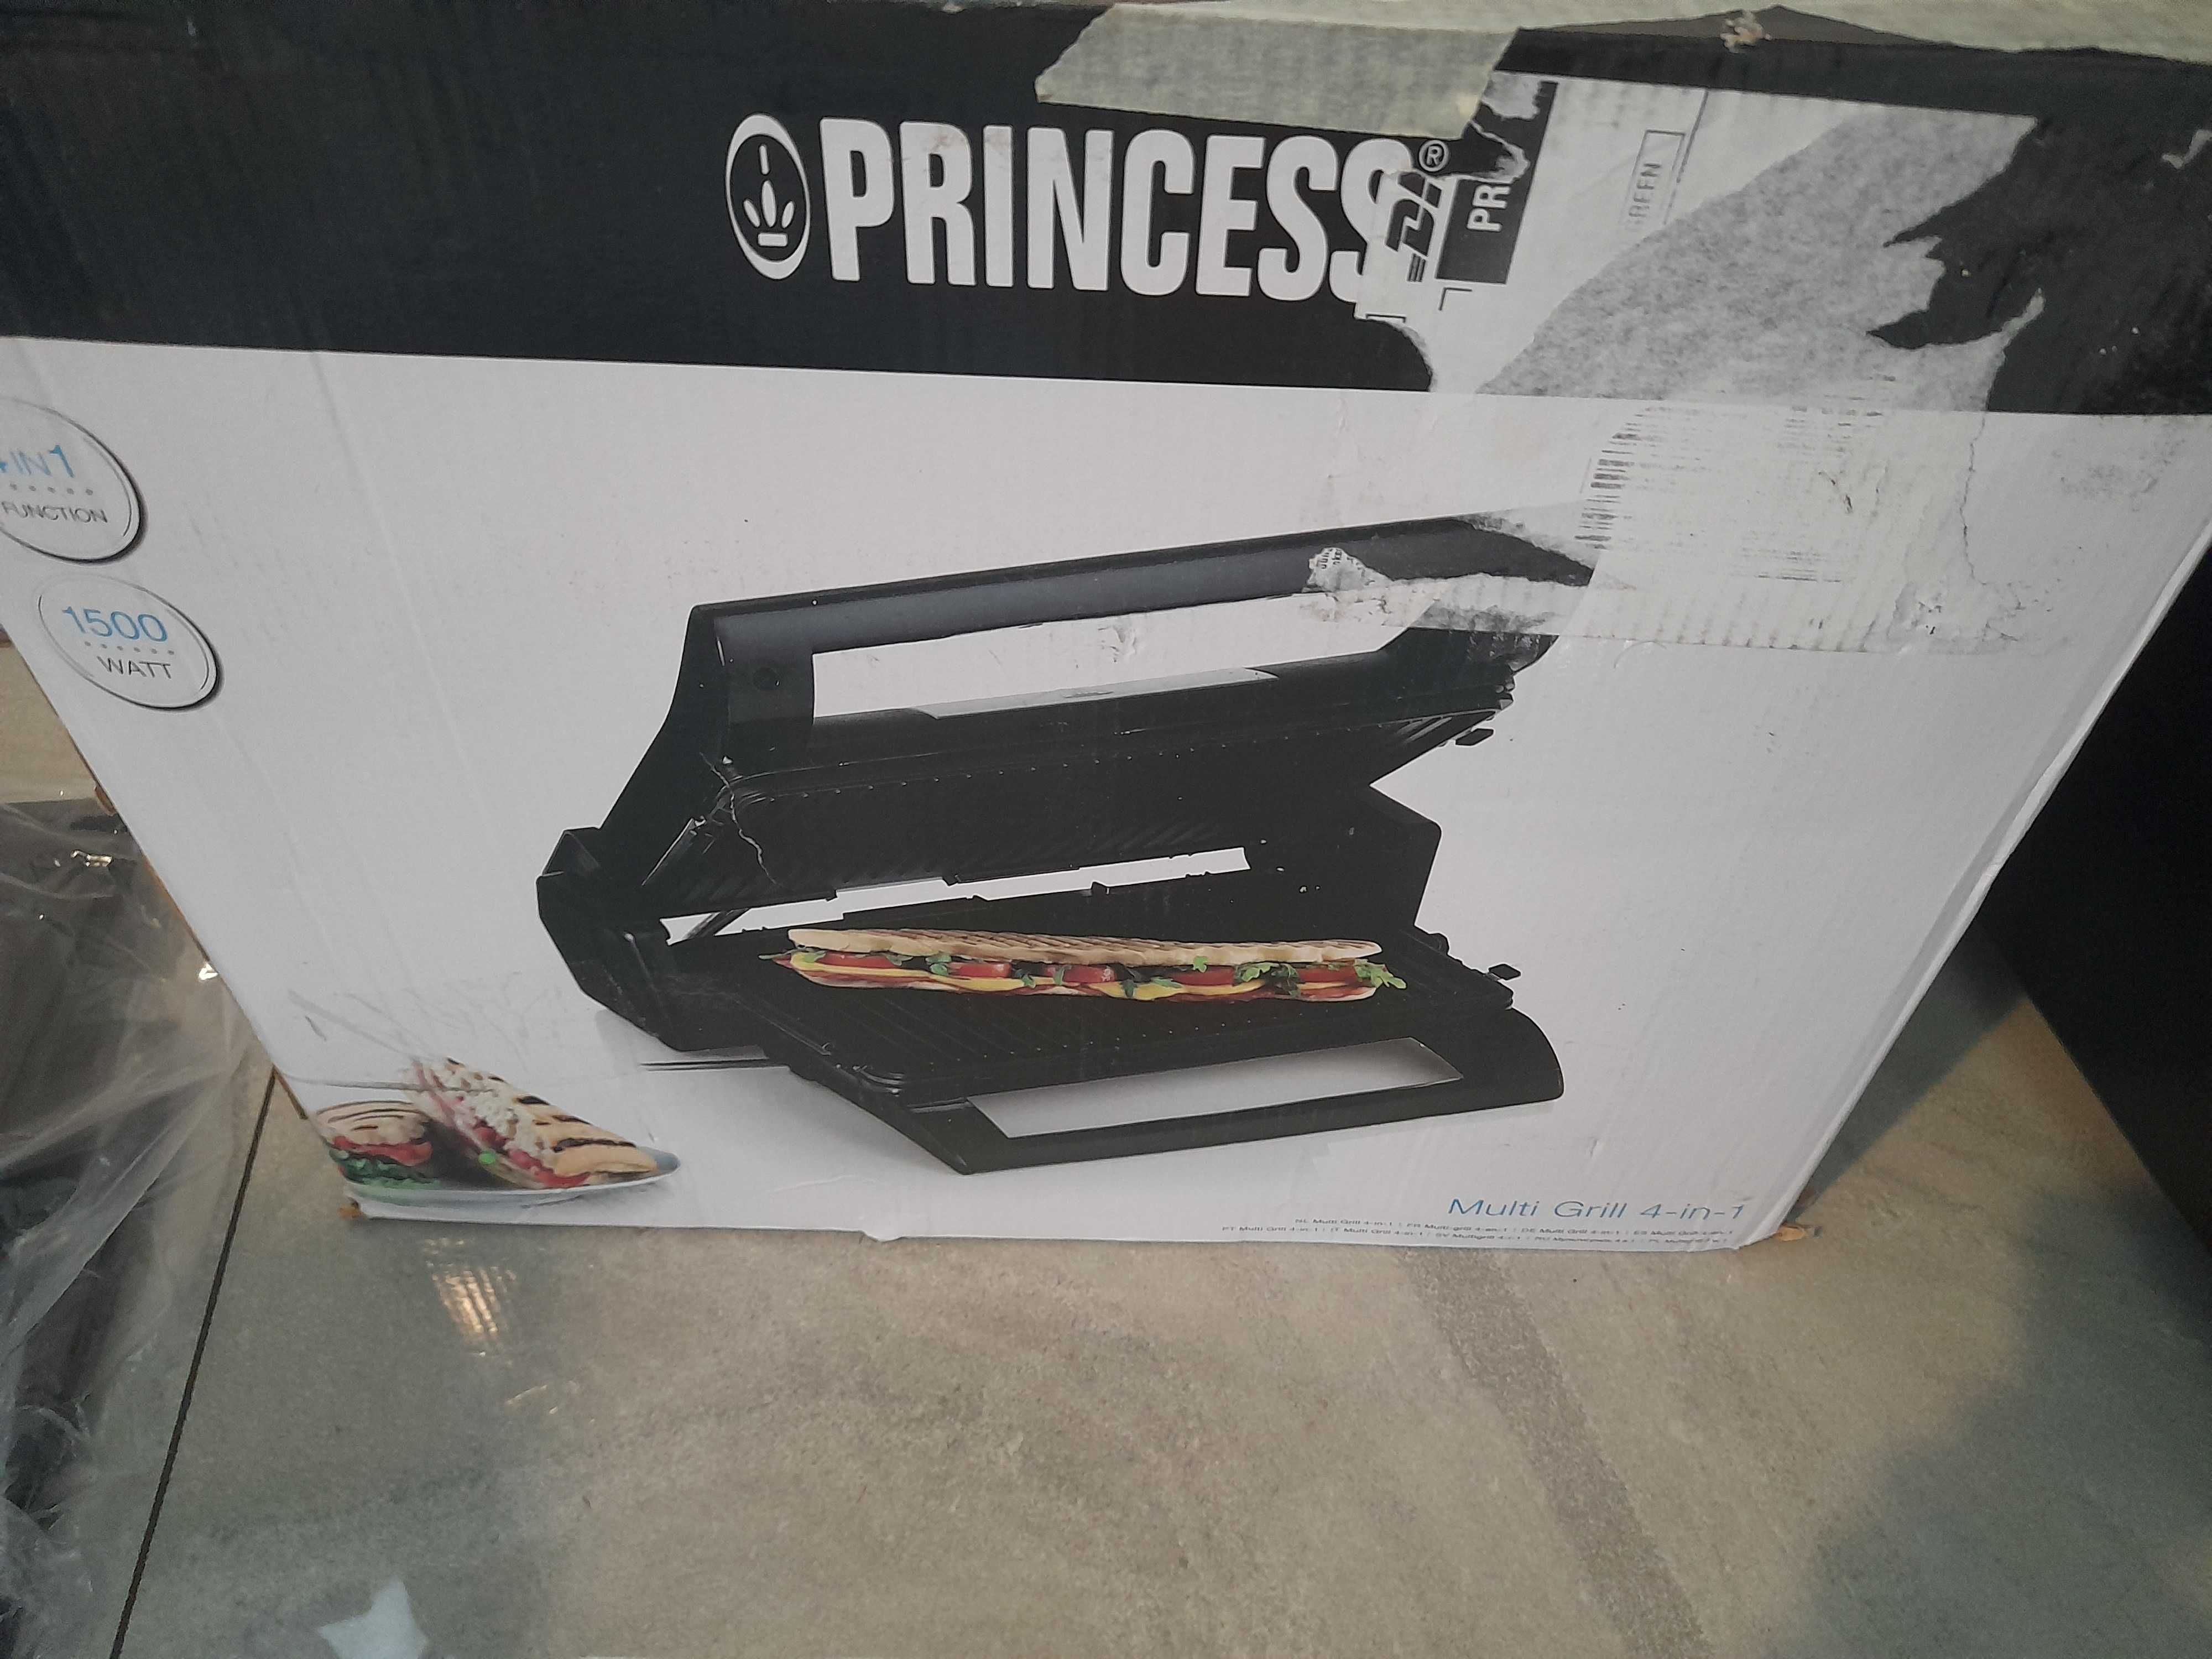 Kontaktowy grill elektryczny Princess 112536 czarny 1500 W